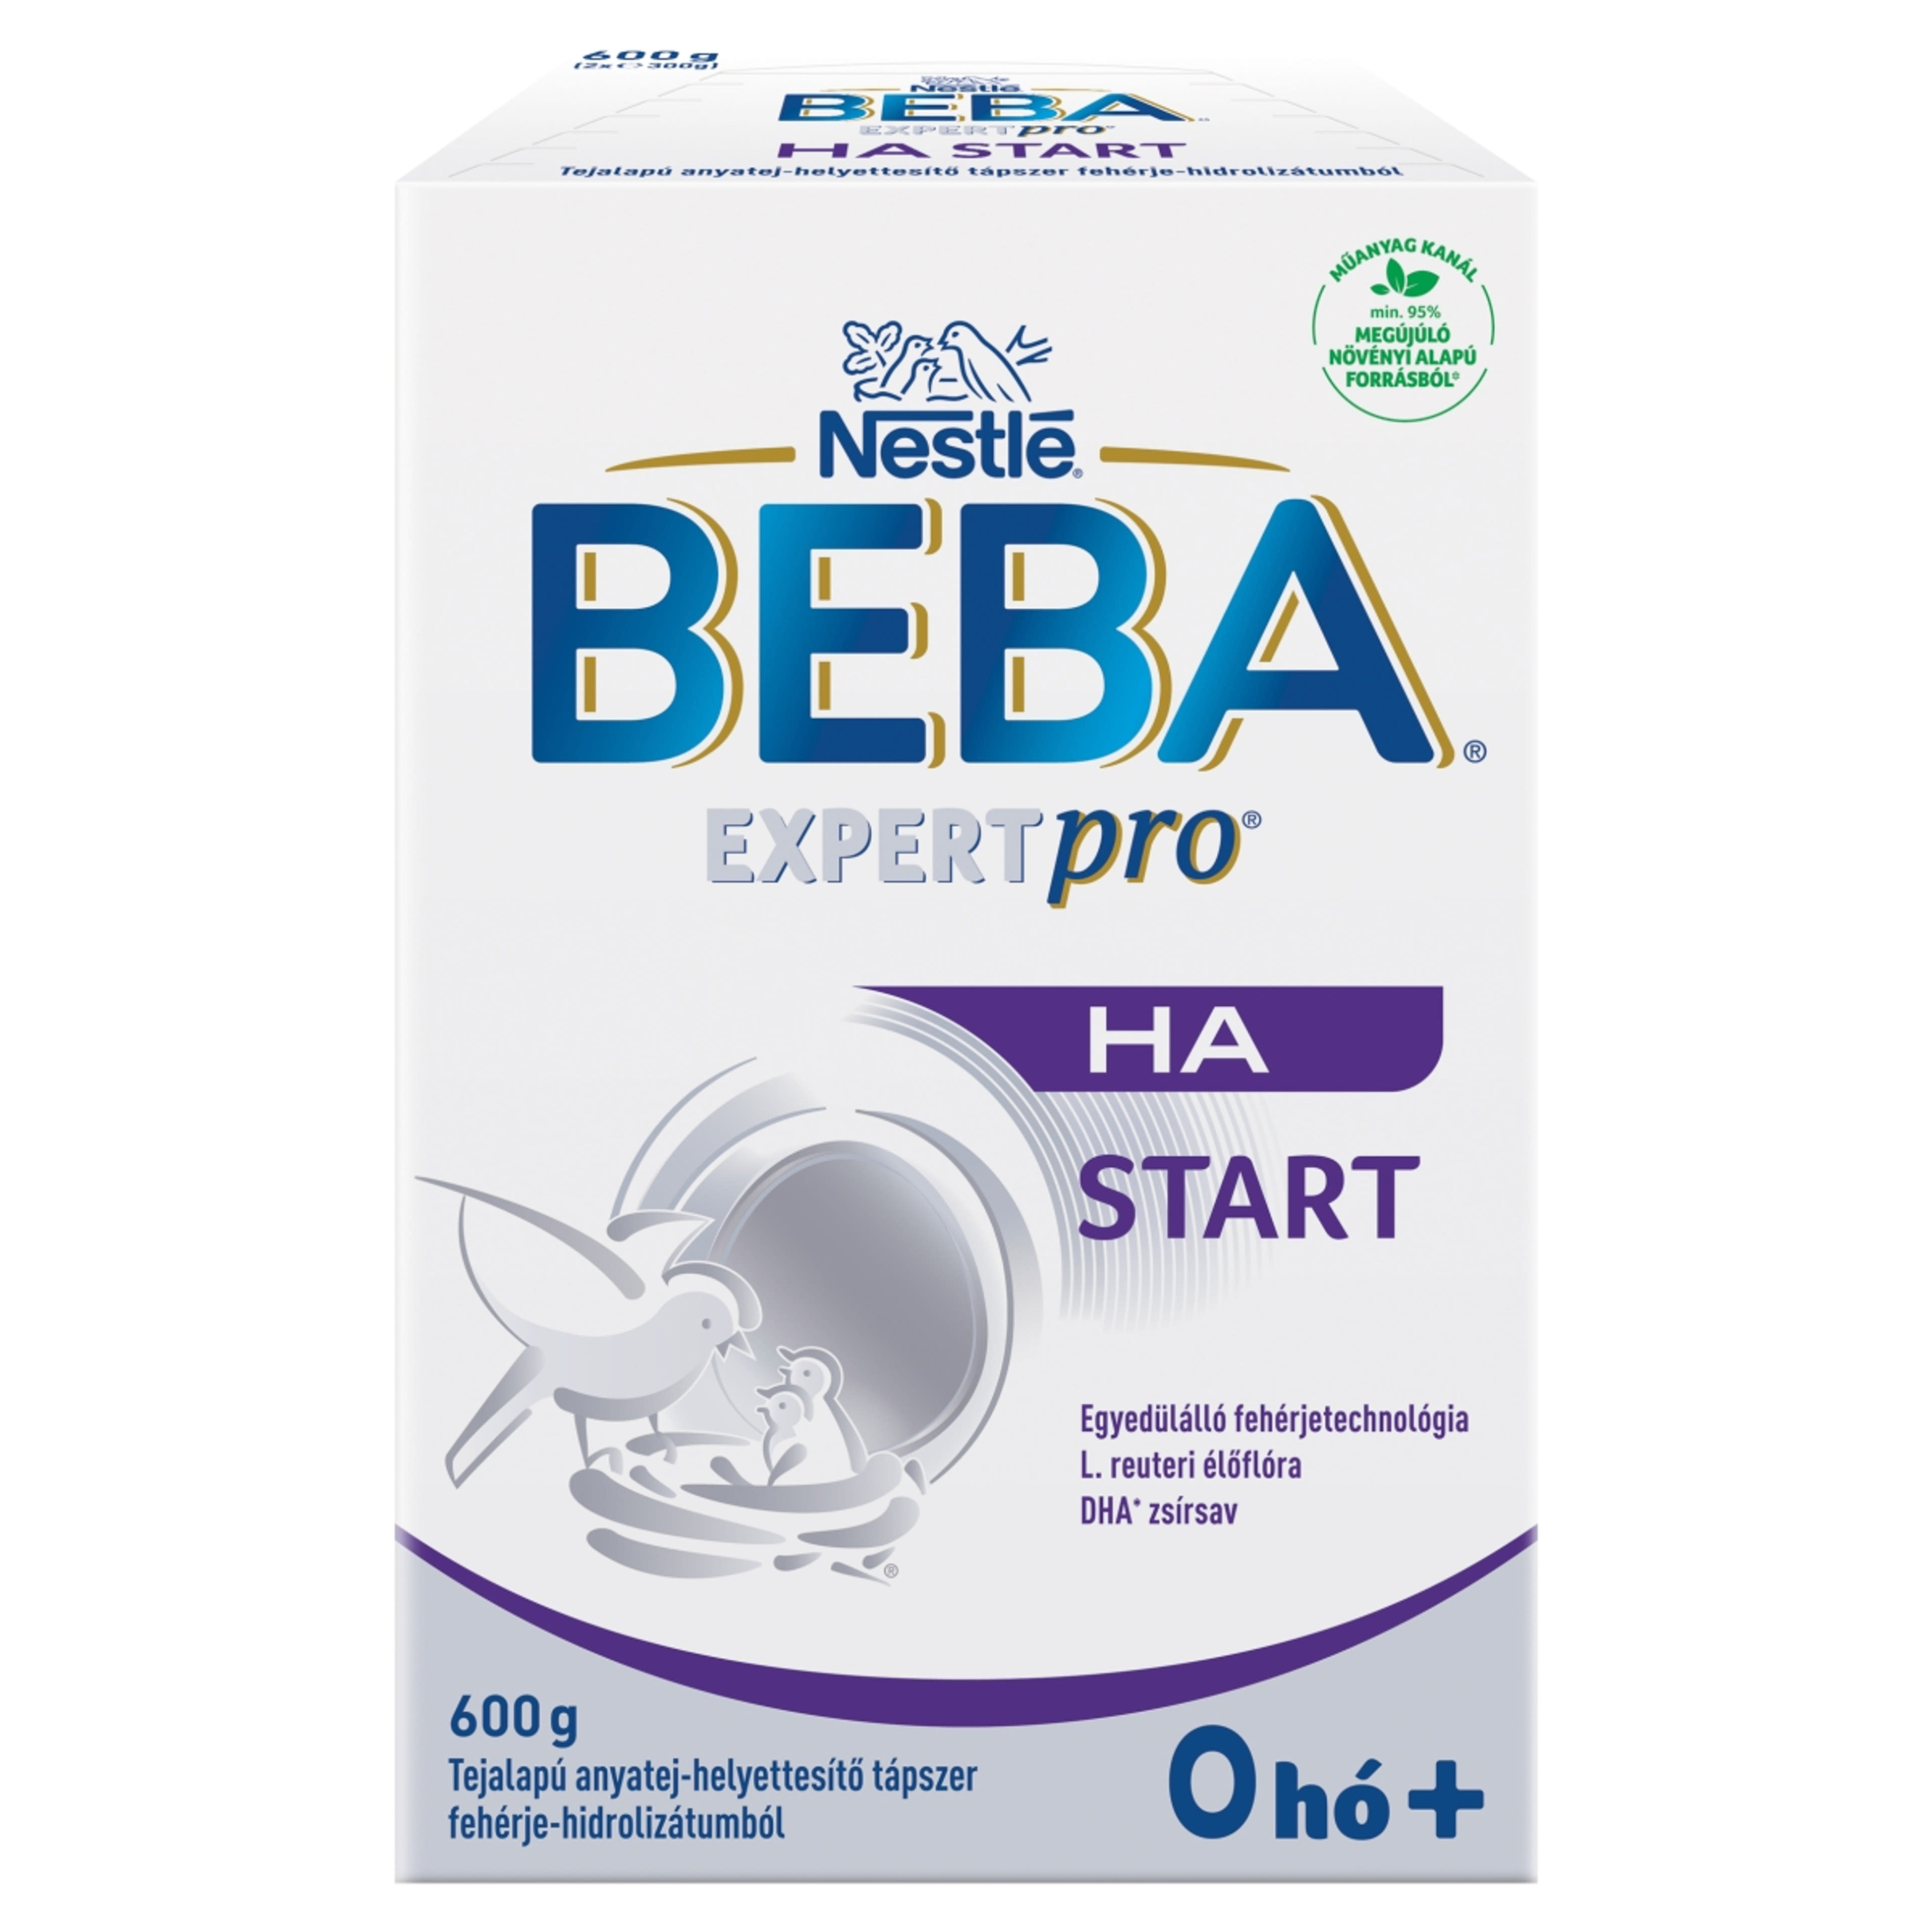 Beba Expertpro HA Start tejalapú anyatej-helyettesítő tápszer fehérje-hidrolizátumból 0 hónapos kortól -  600 g-1